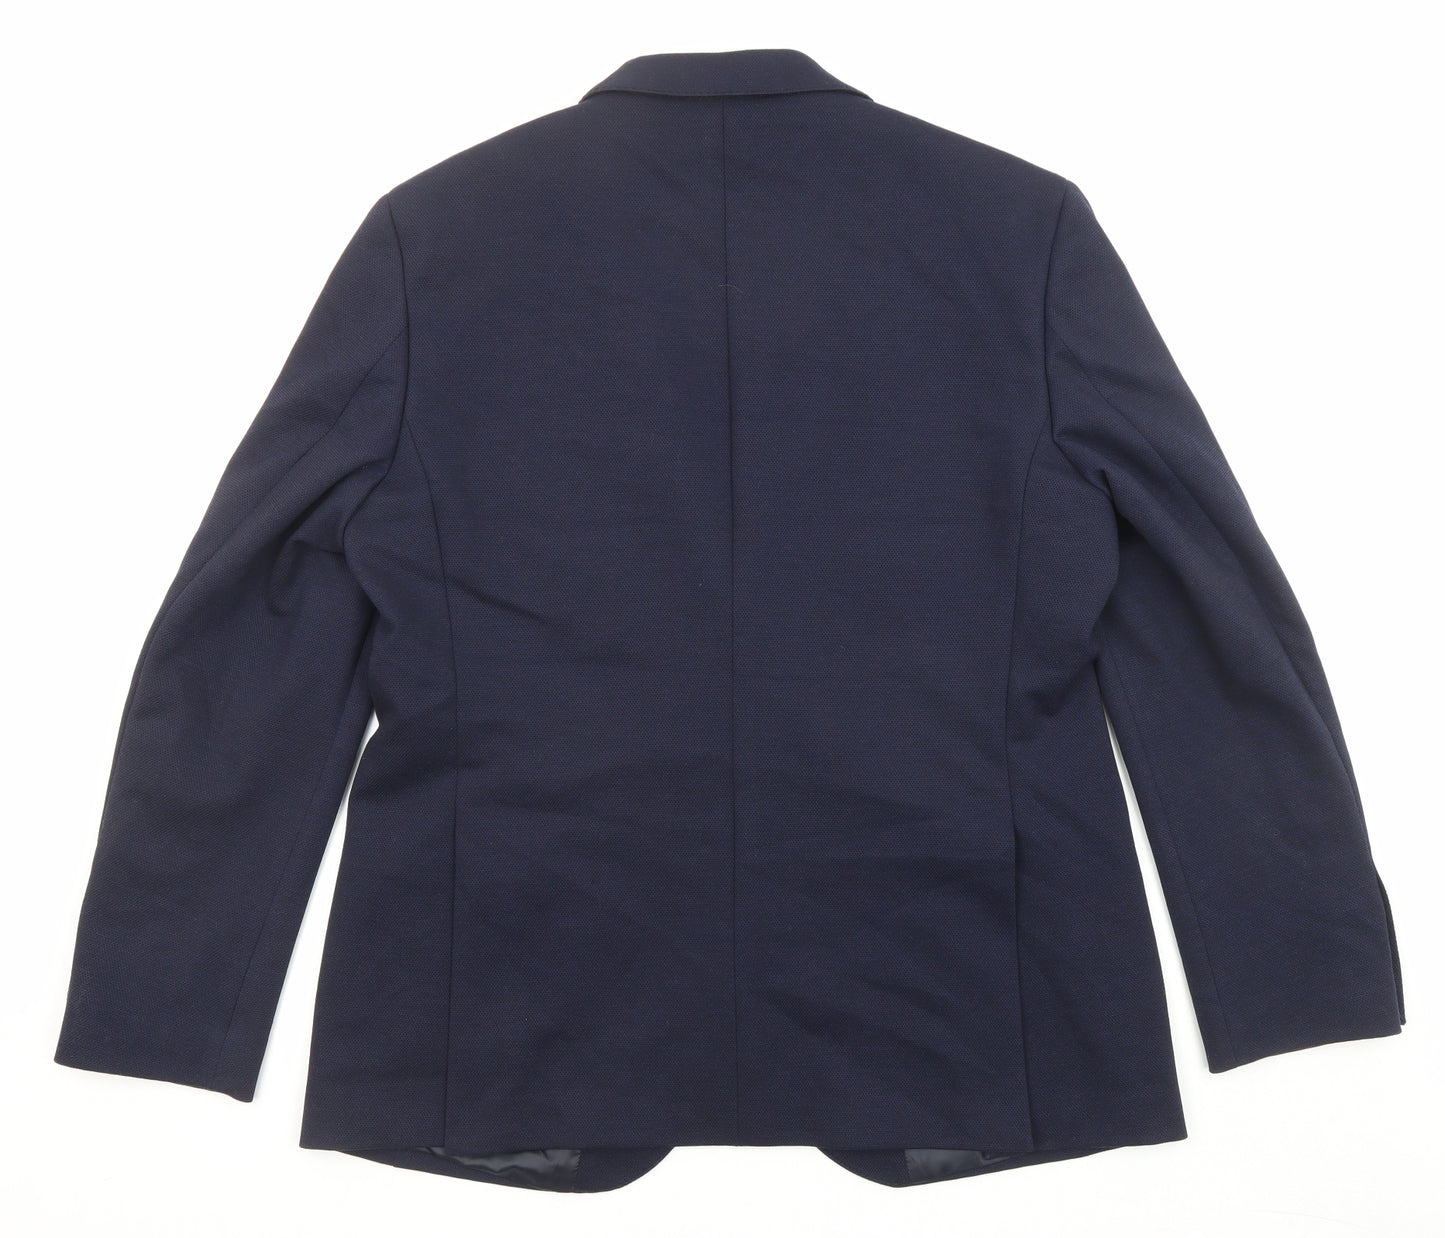 Marks and Spencer Mens Blue Polyamide Jacket Suit Jacket Size 42 Regular